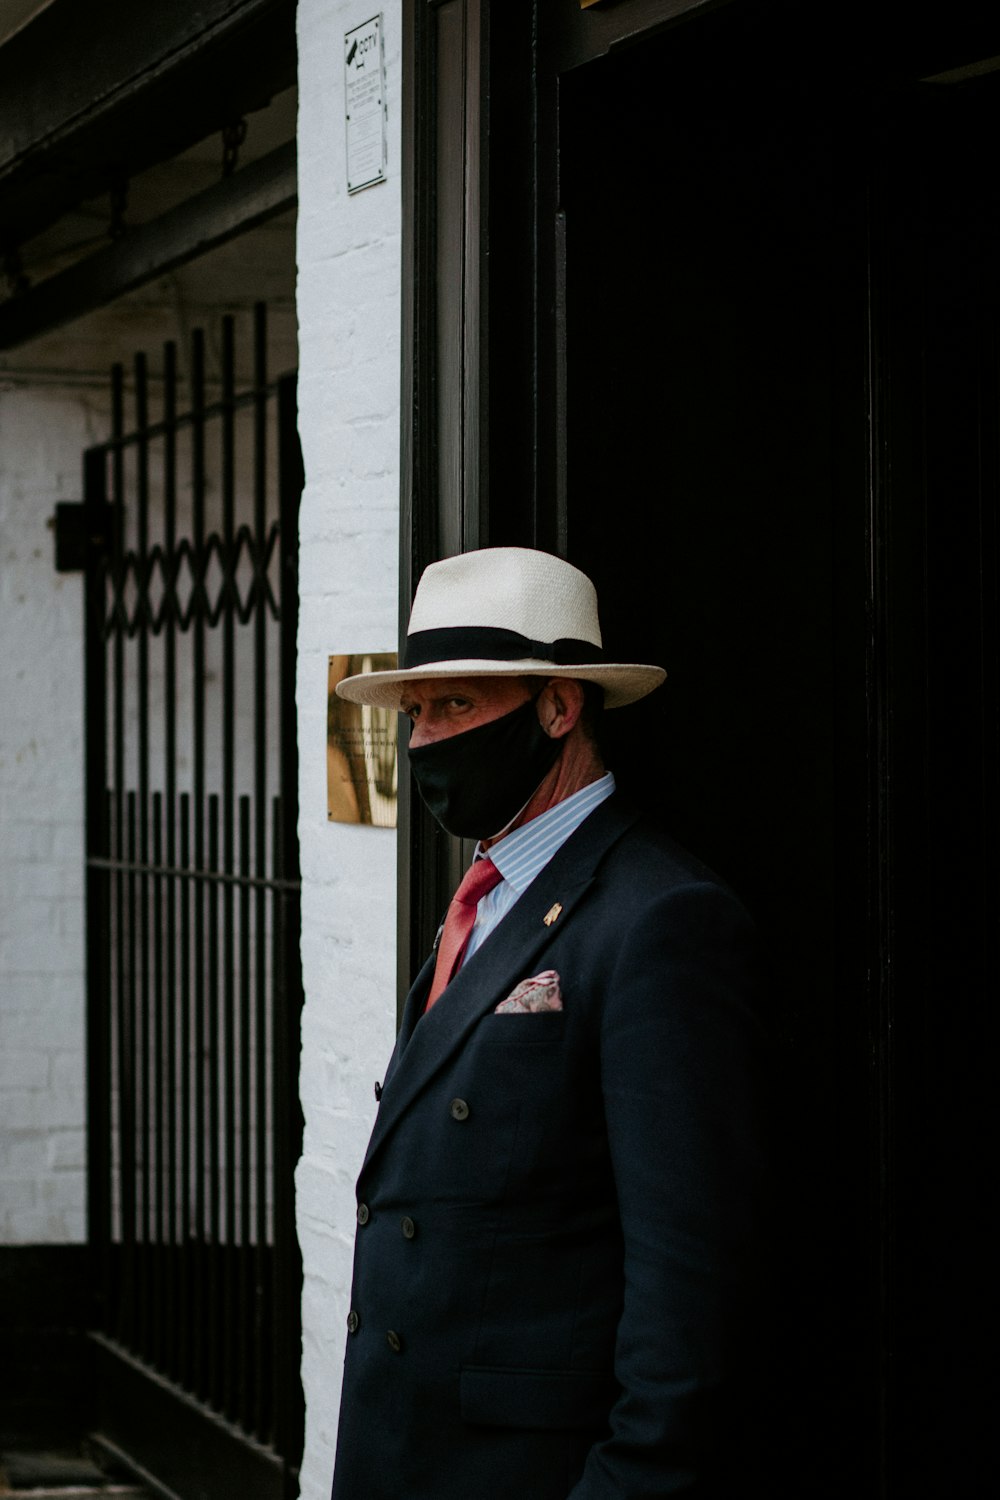 man in black suit wearing brown hat standing near black metal gate during daytime